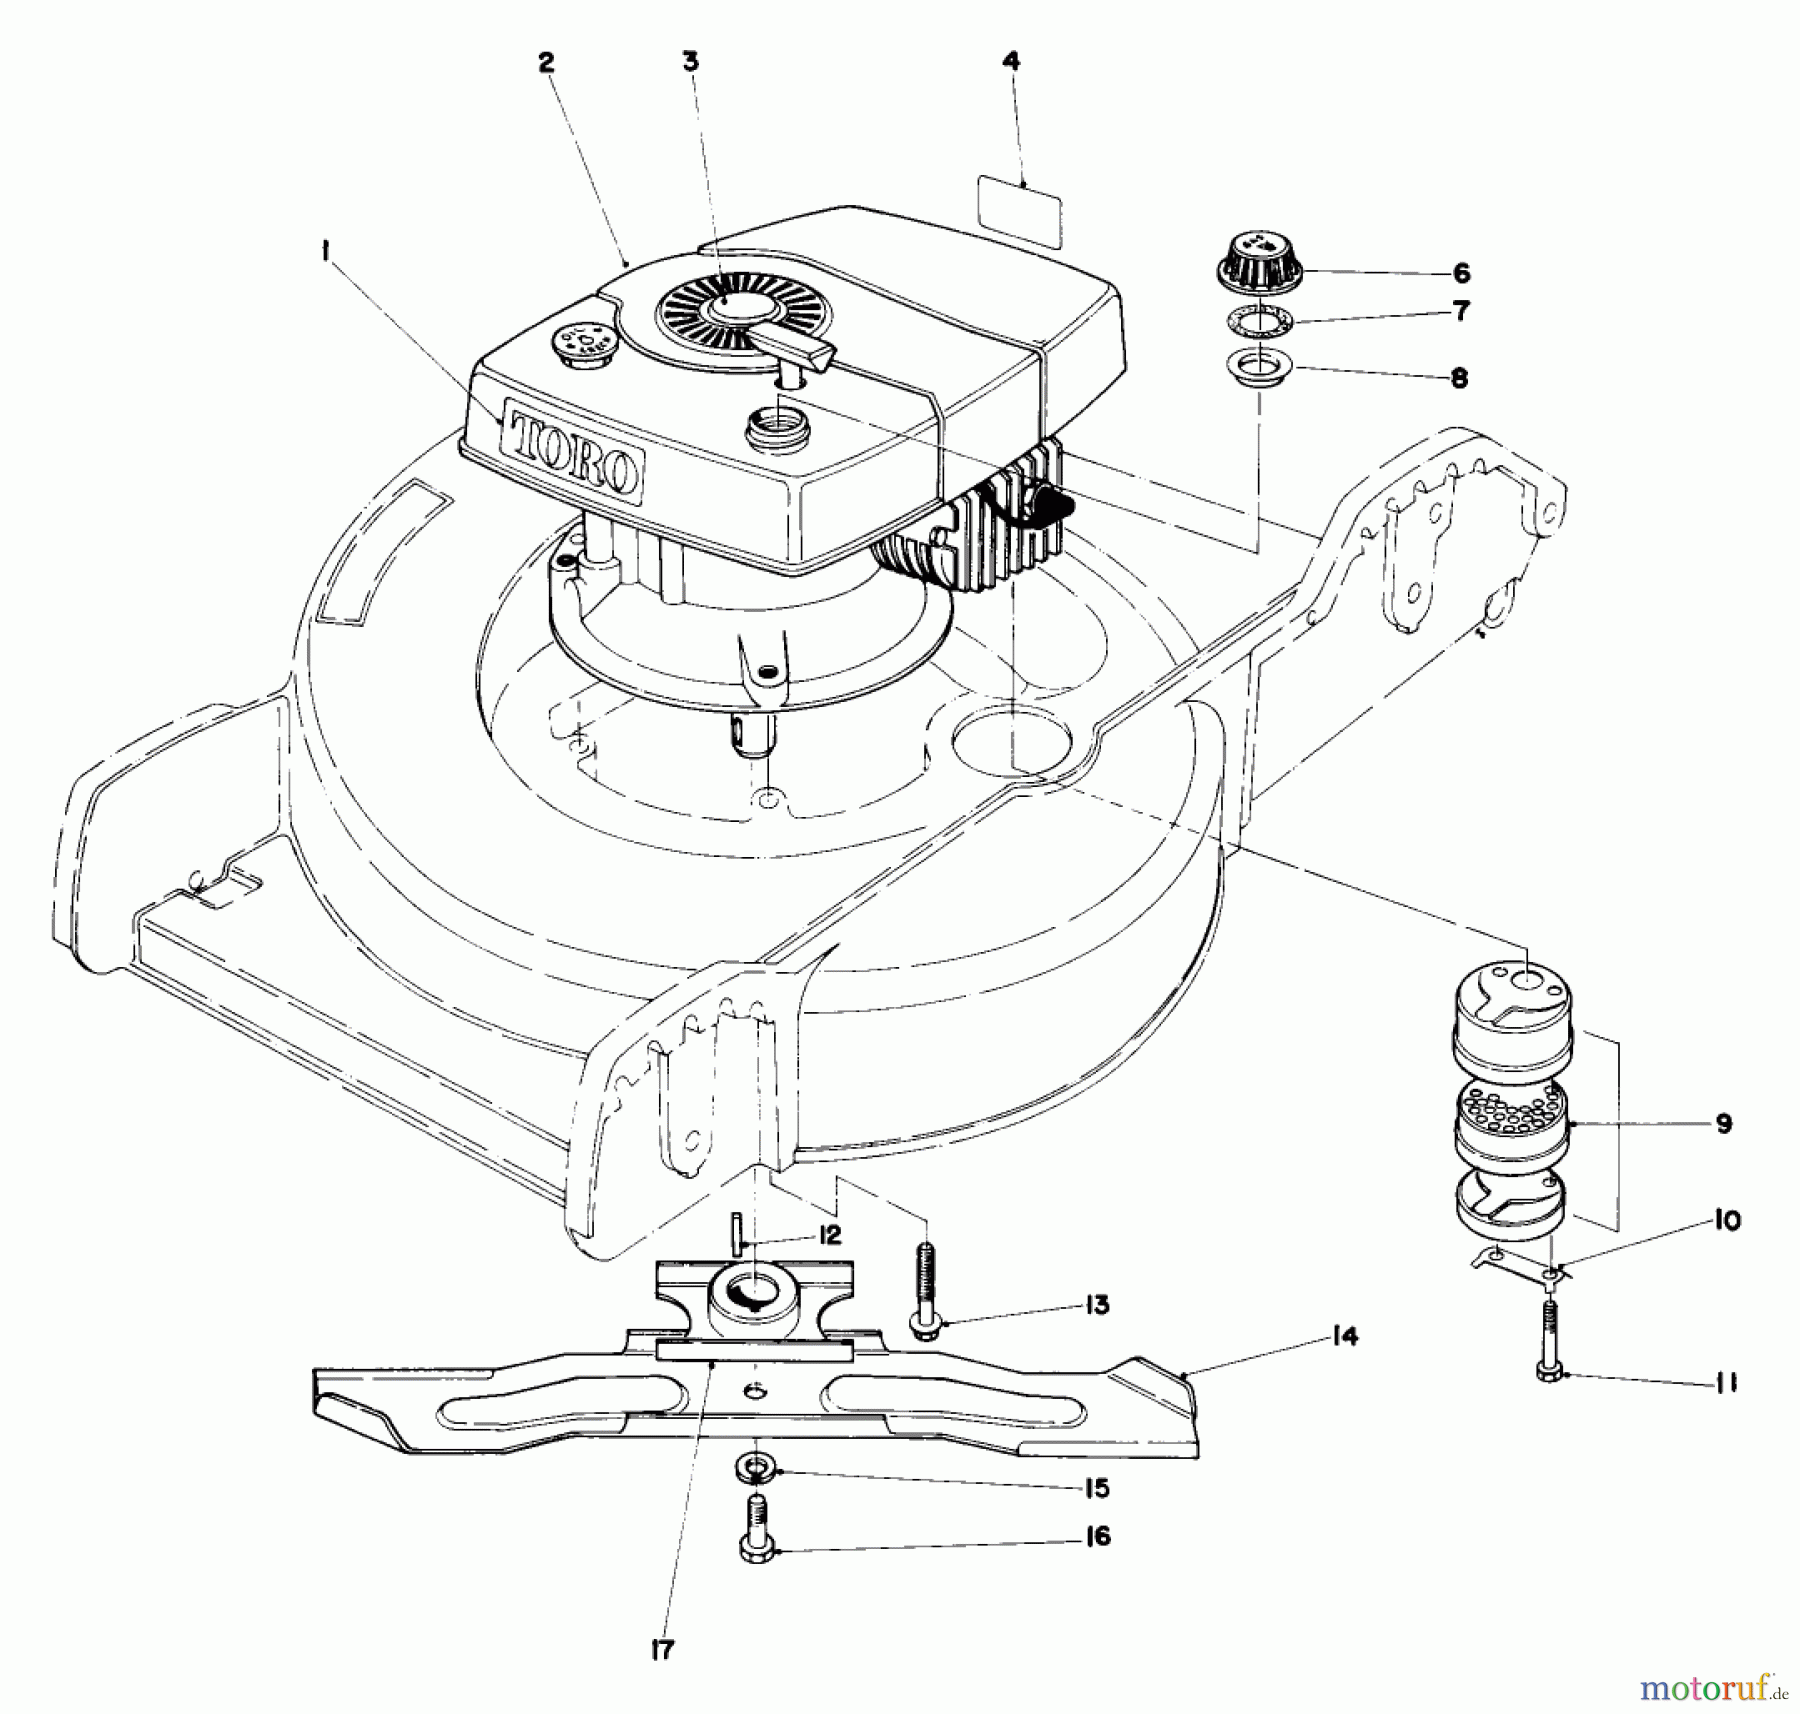  Toro Neu Mowers, Walk-Behind Seite 1 20772 - Toro Lawnmower, 1980 (0000001-0999999) ENGINE ASSEMBLY